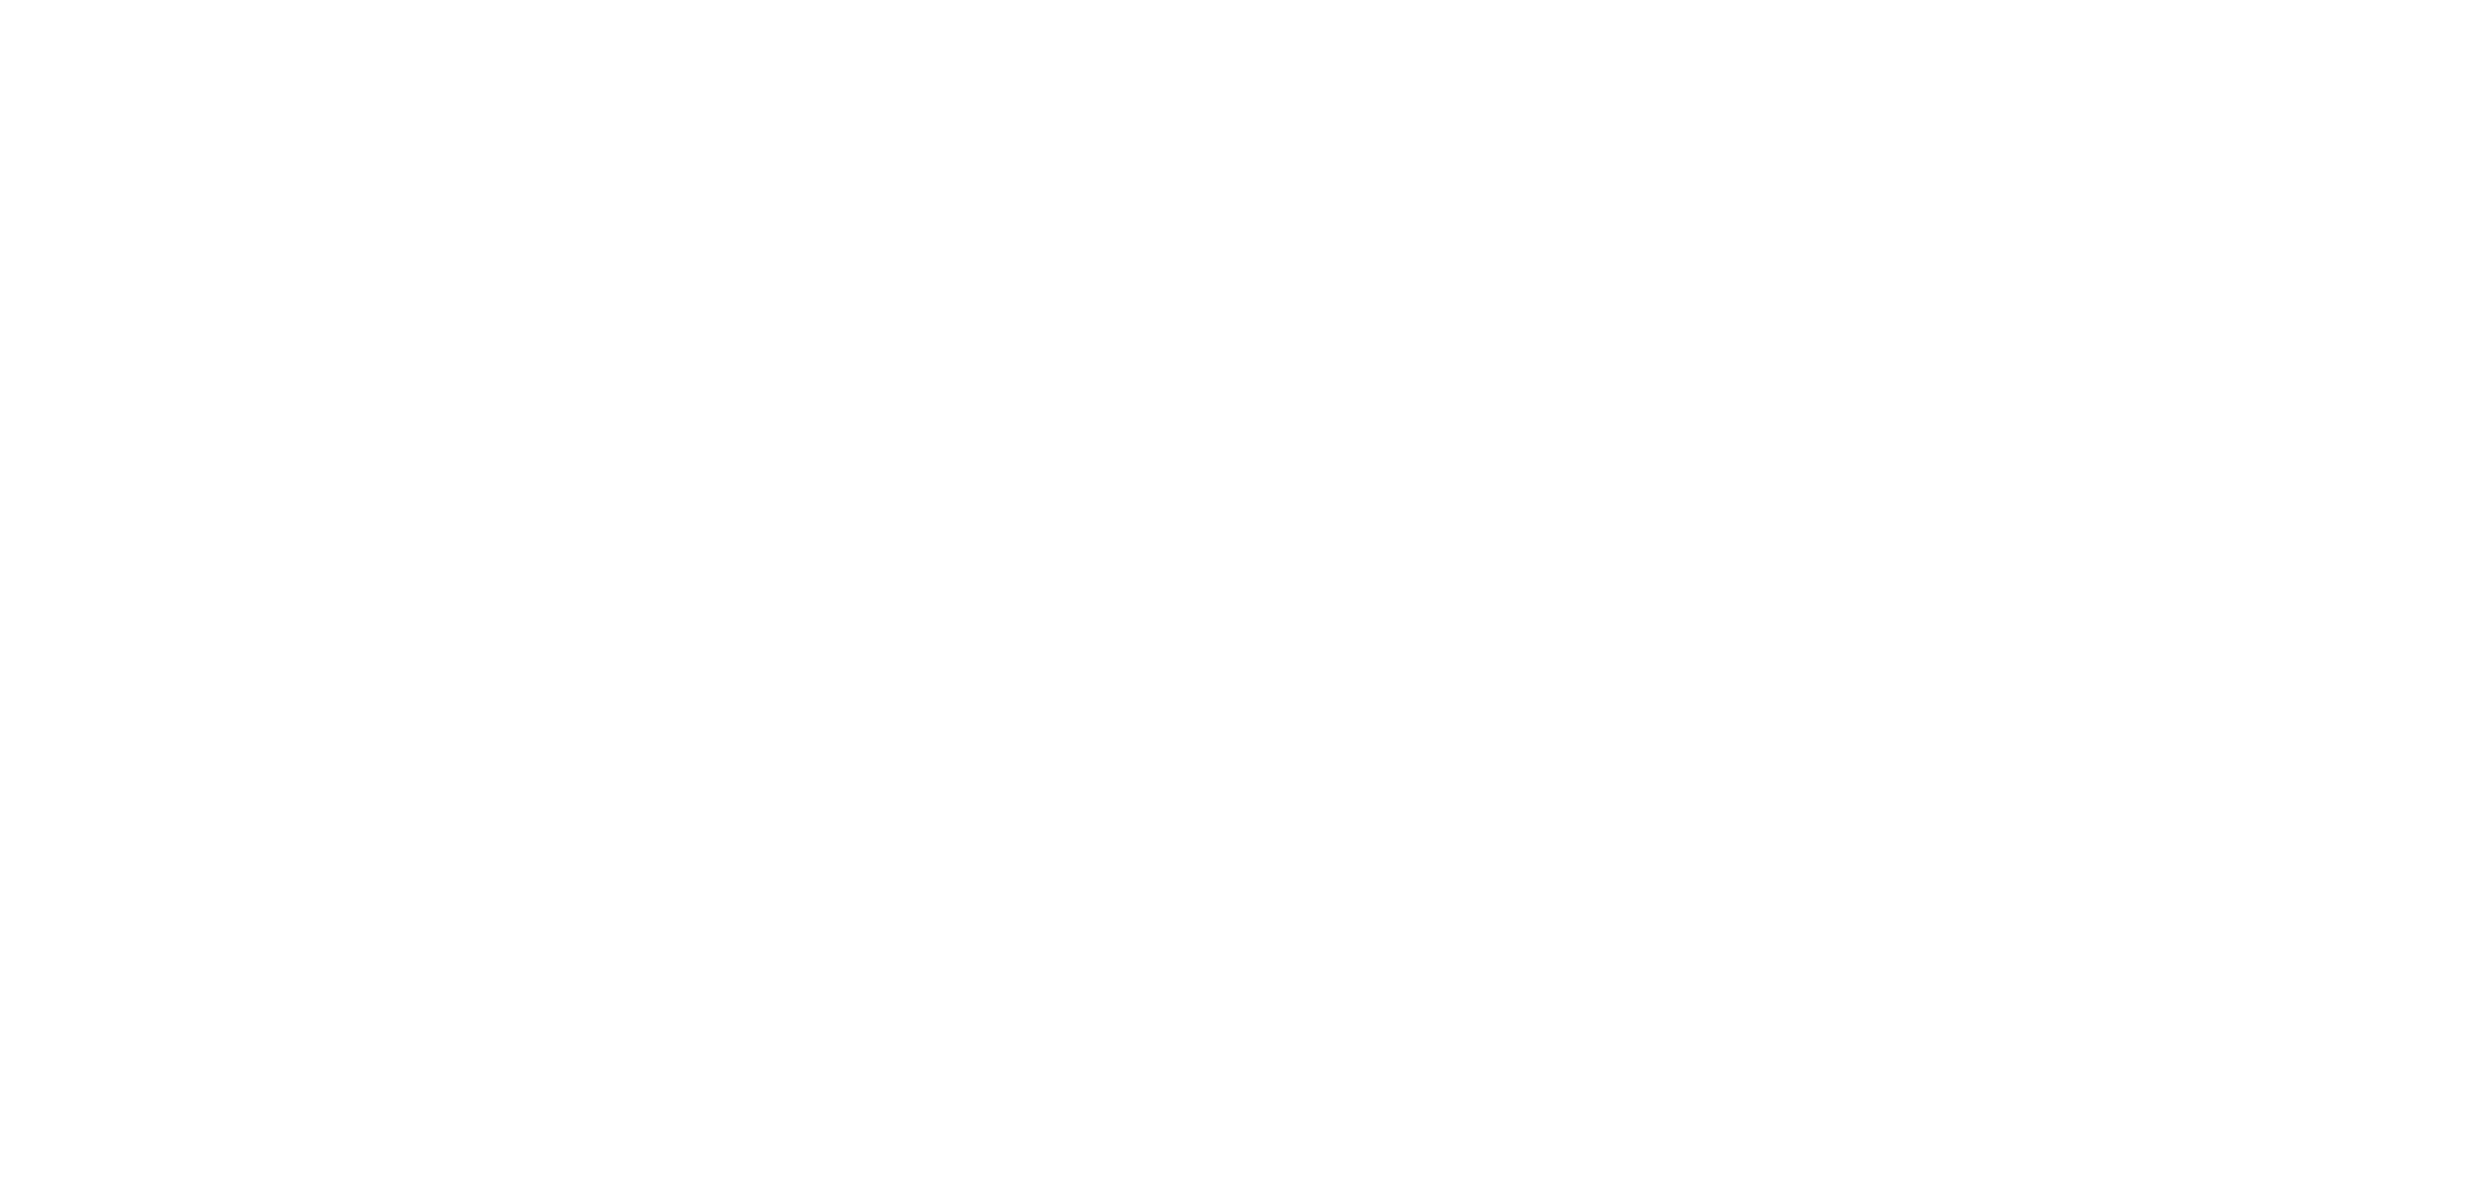 Förderverein der Falkensteinschule Bad Herrenalb